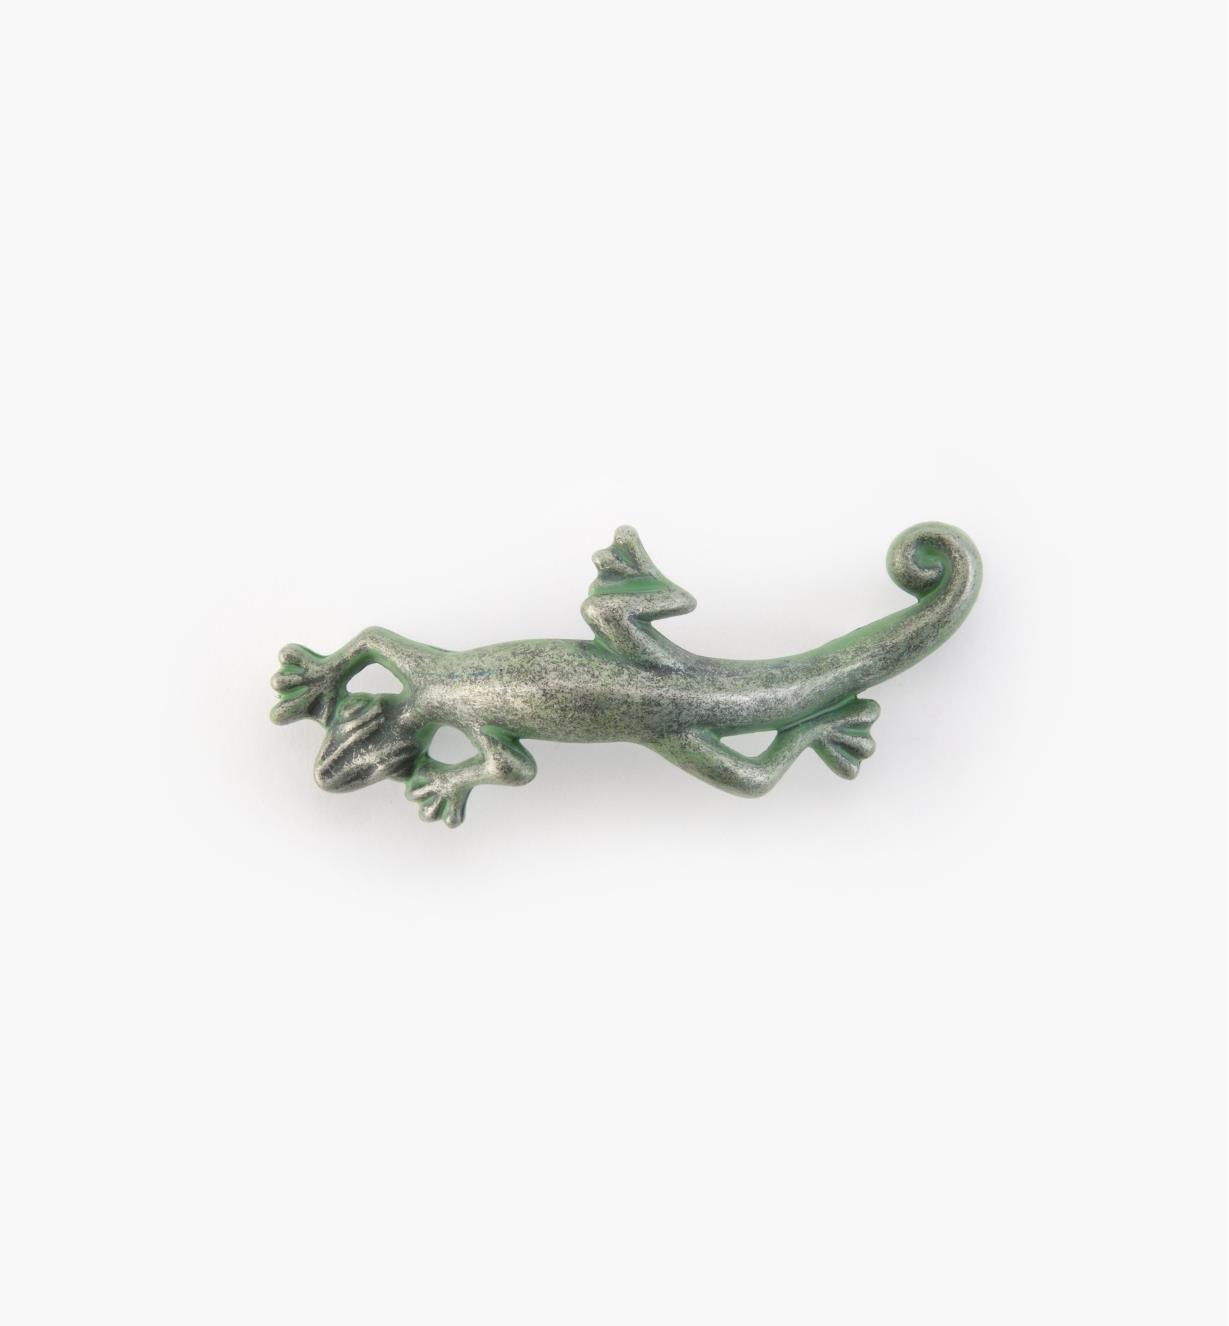 03W2814 - Whimsical 4 1/4" x 1 1/2" Verde Gris Lizard Pull, each